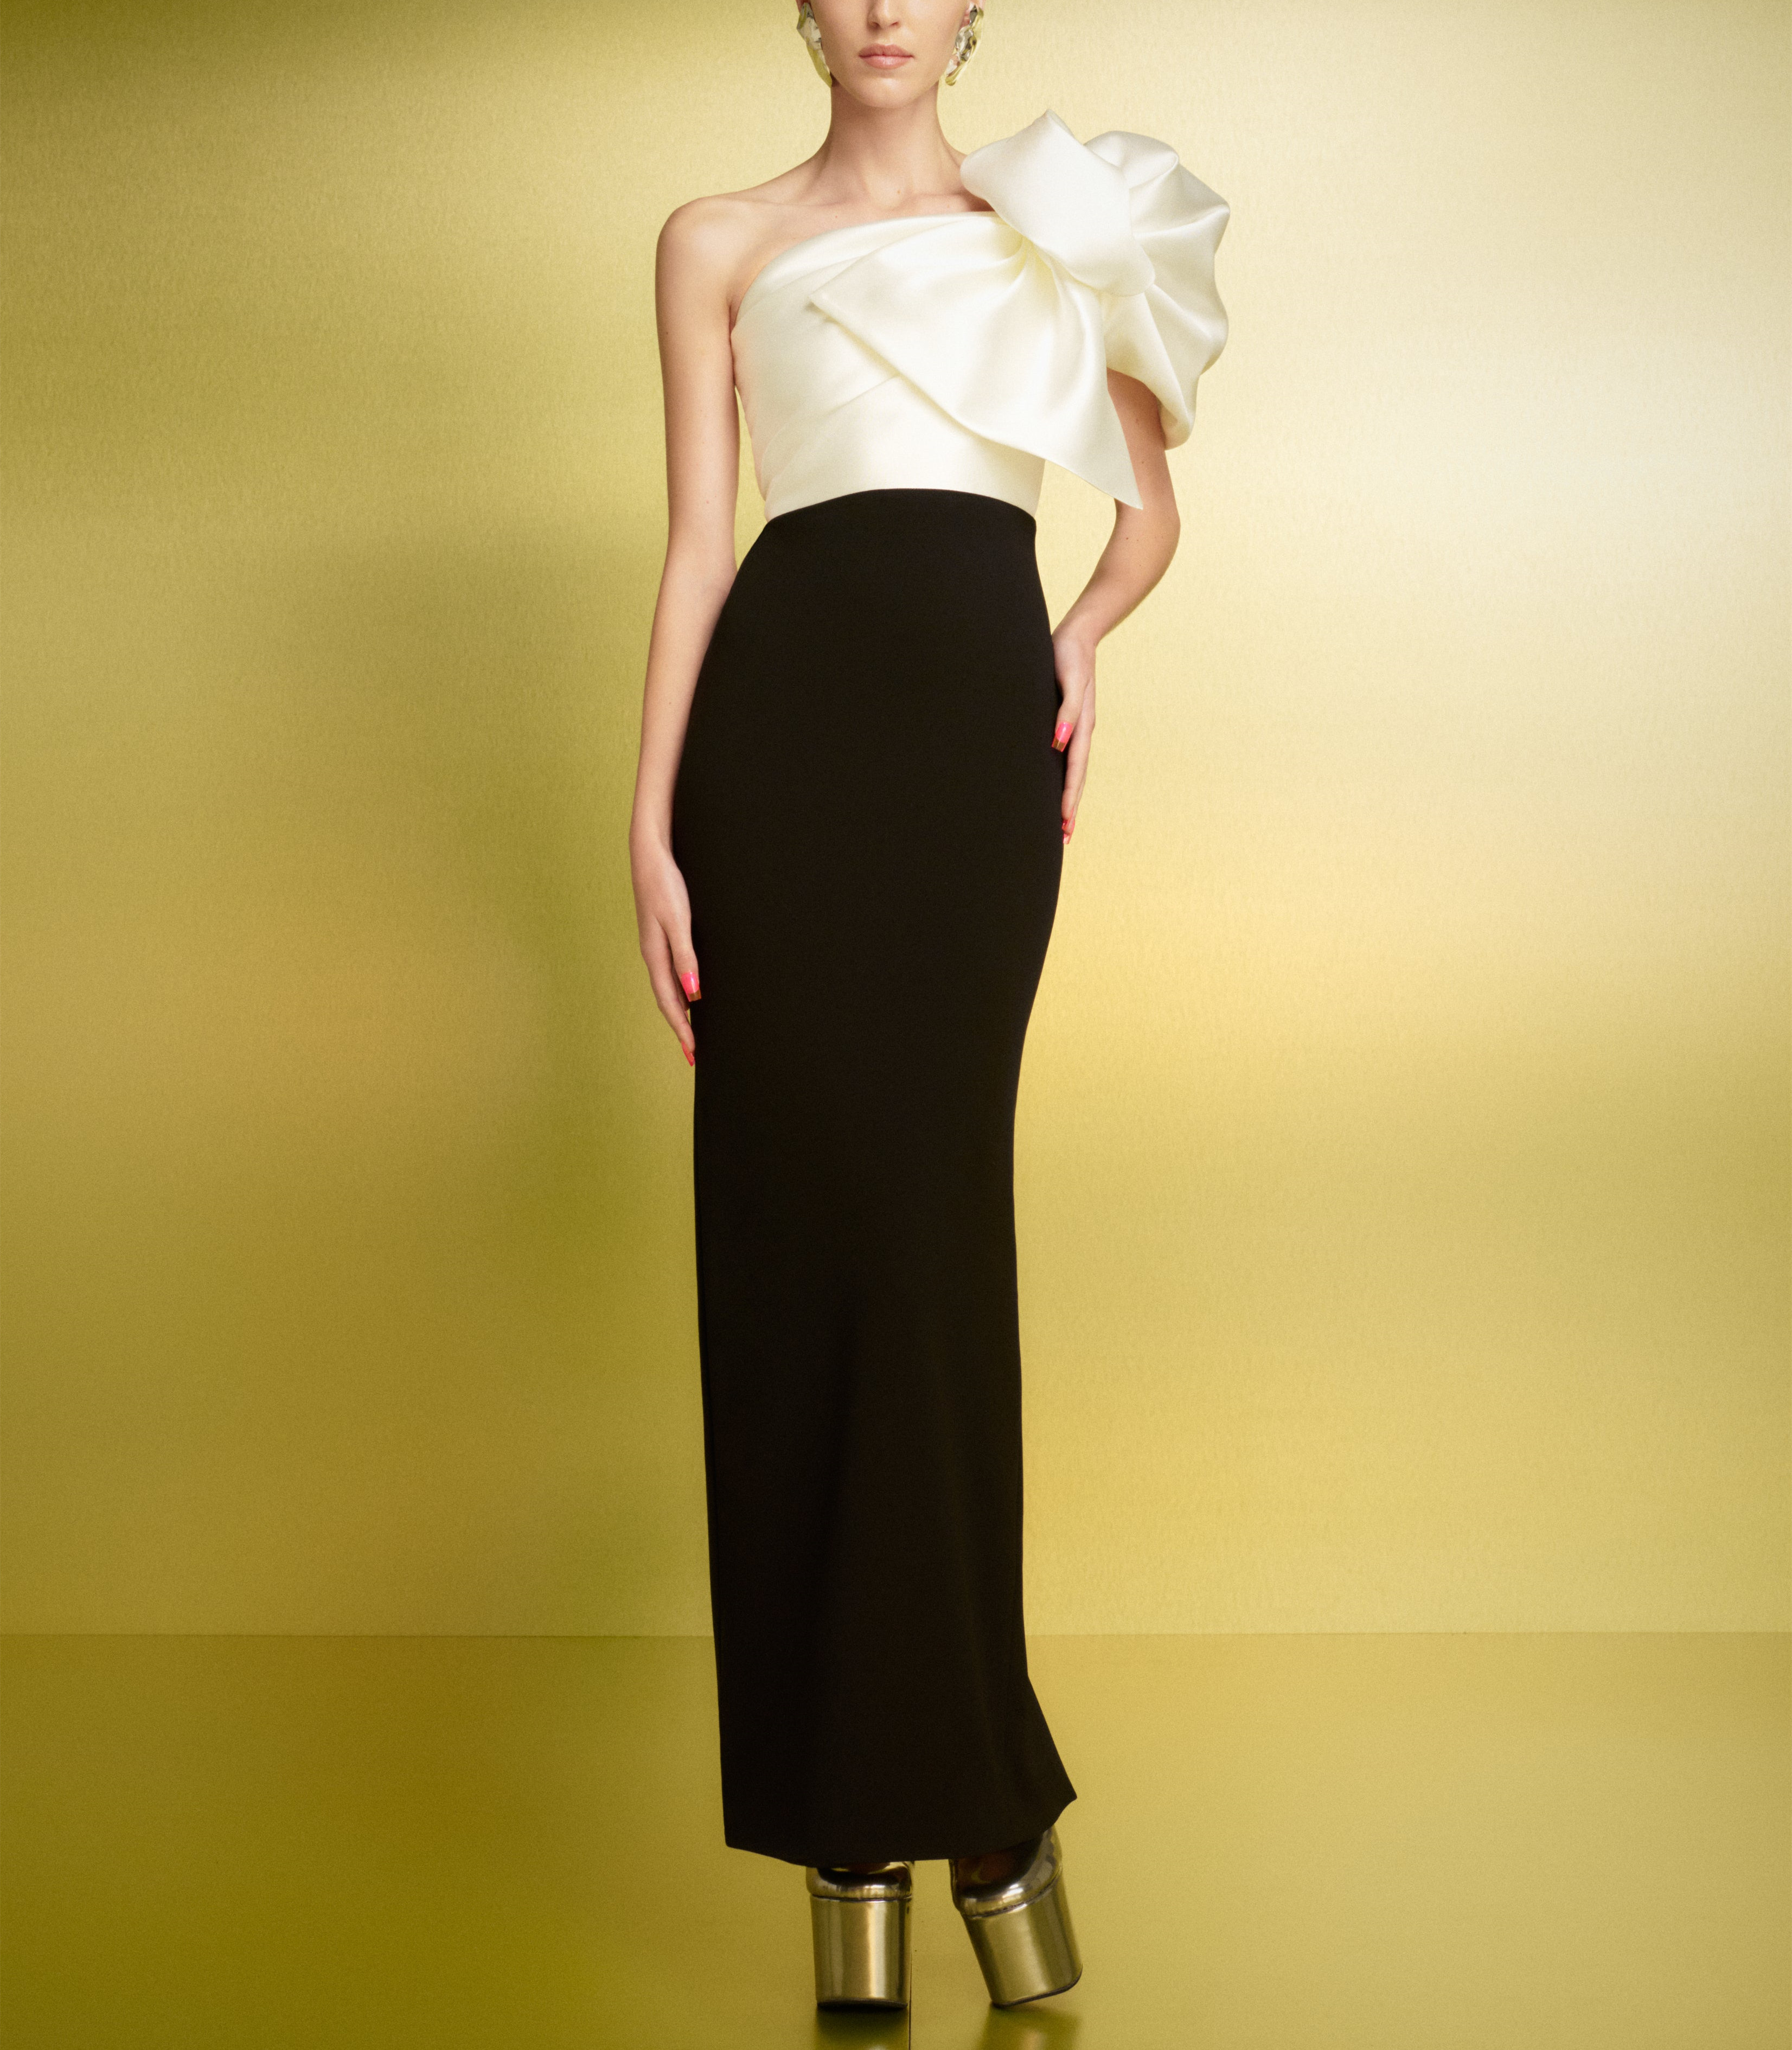 Elegante lange schwarze Crêpe-Abschlussballkleider mit Schleife/Schlitz-Hülle, einschultriges Satin-Knöchellängen-Partykleid, formelle Maxi-Abendkleider für Frauen